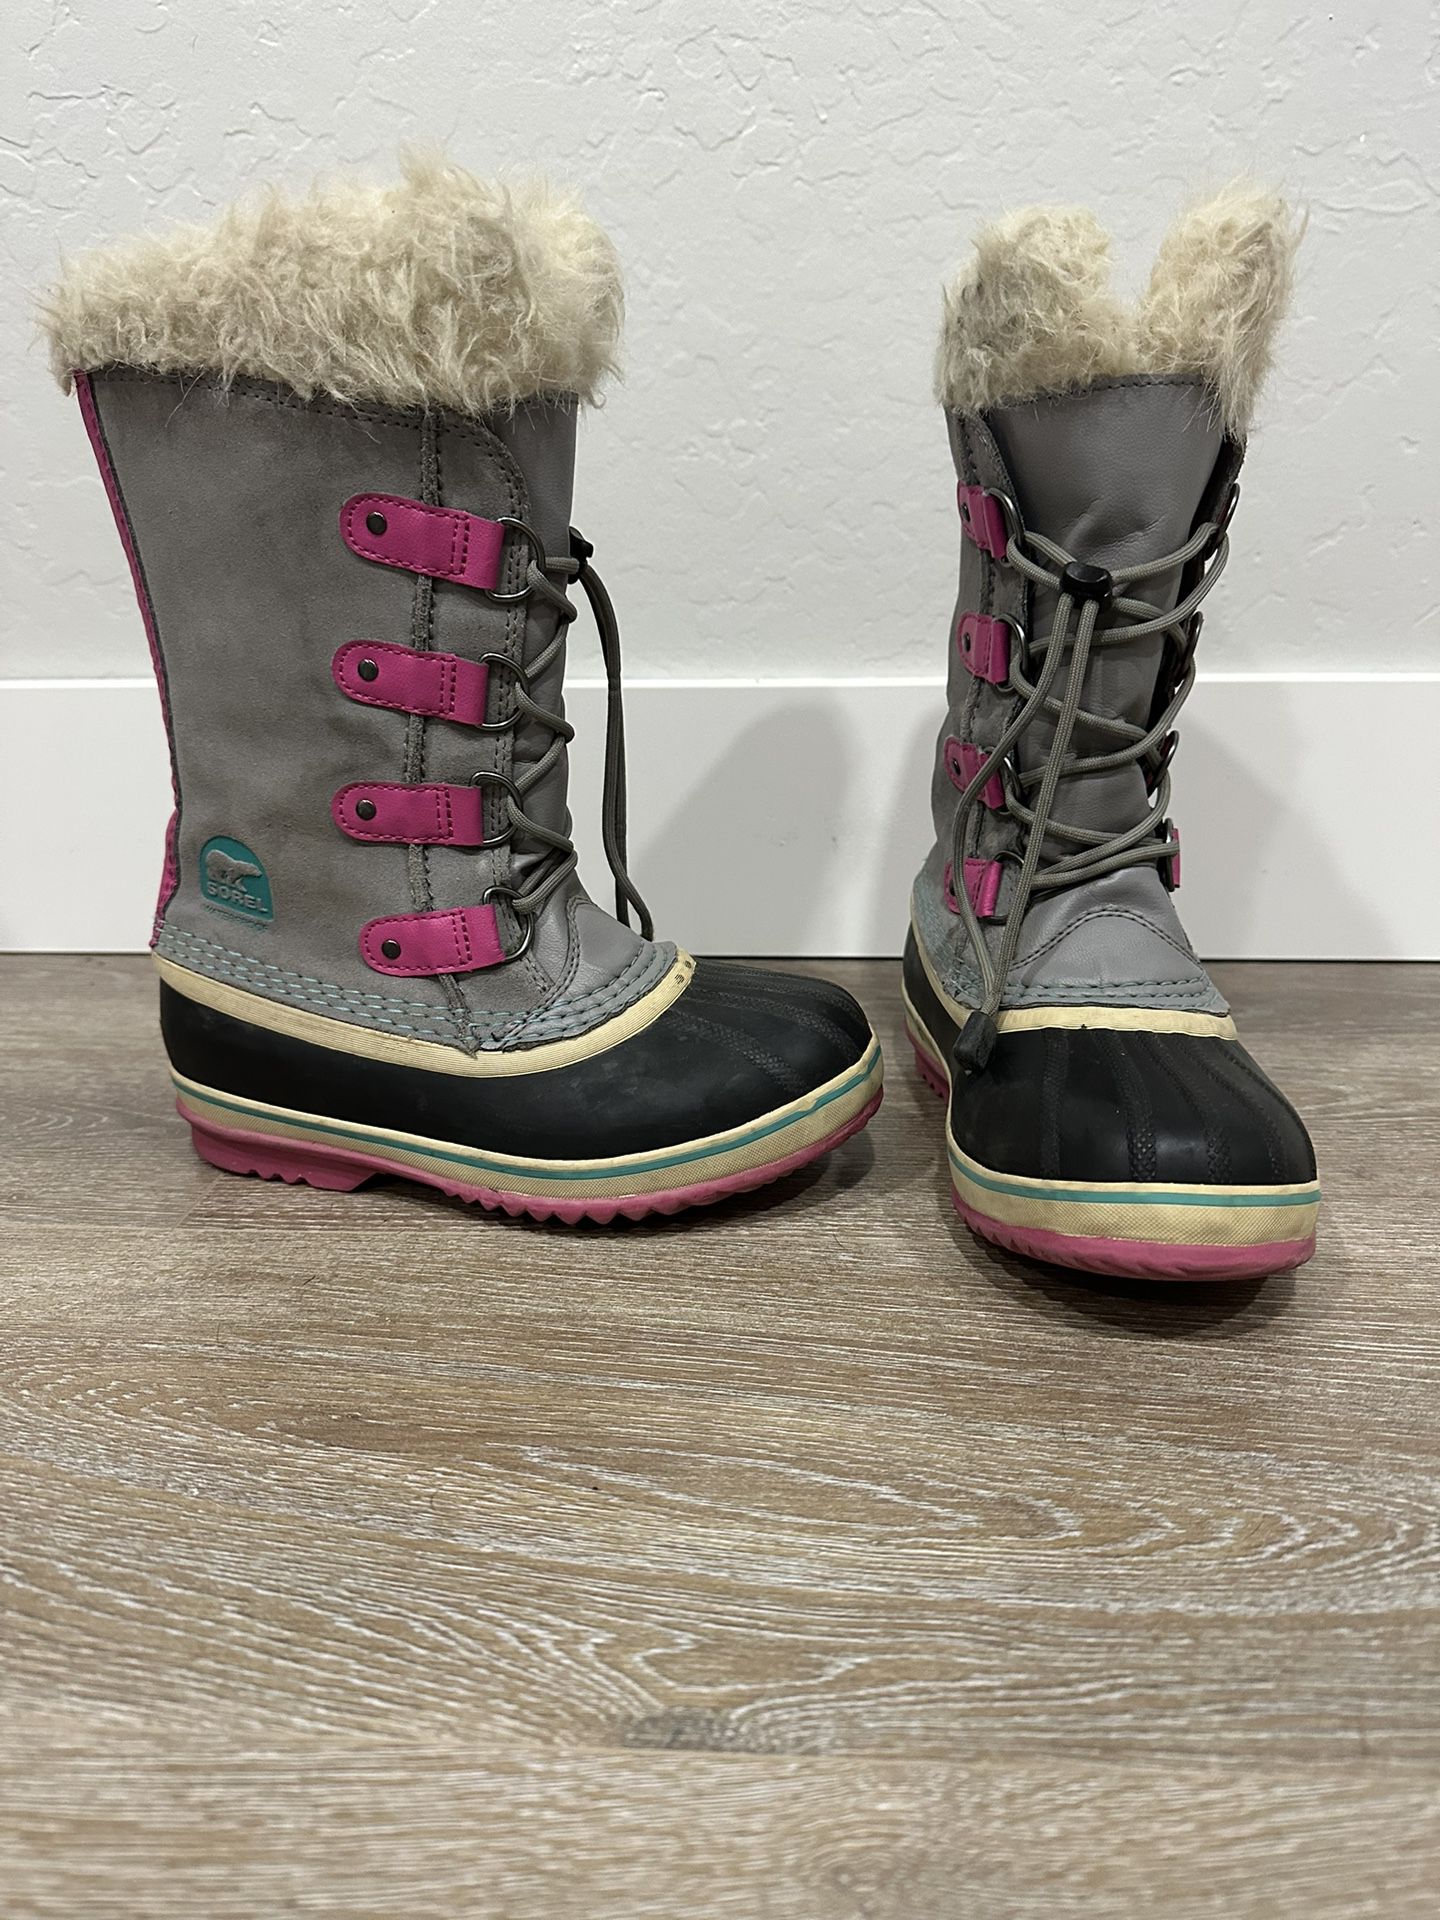 Girls Sorel Waterproof snow boots 